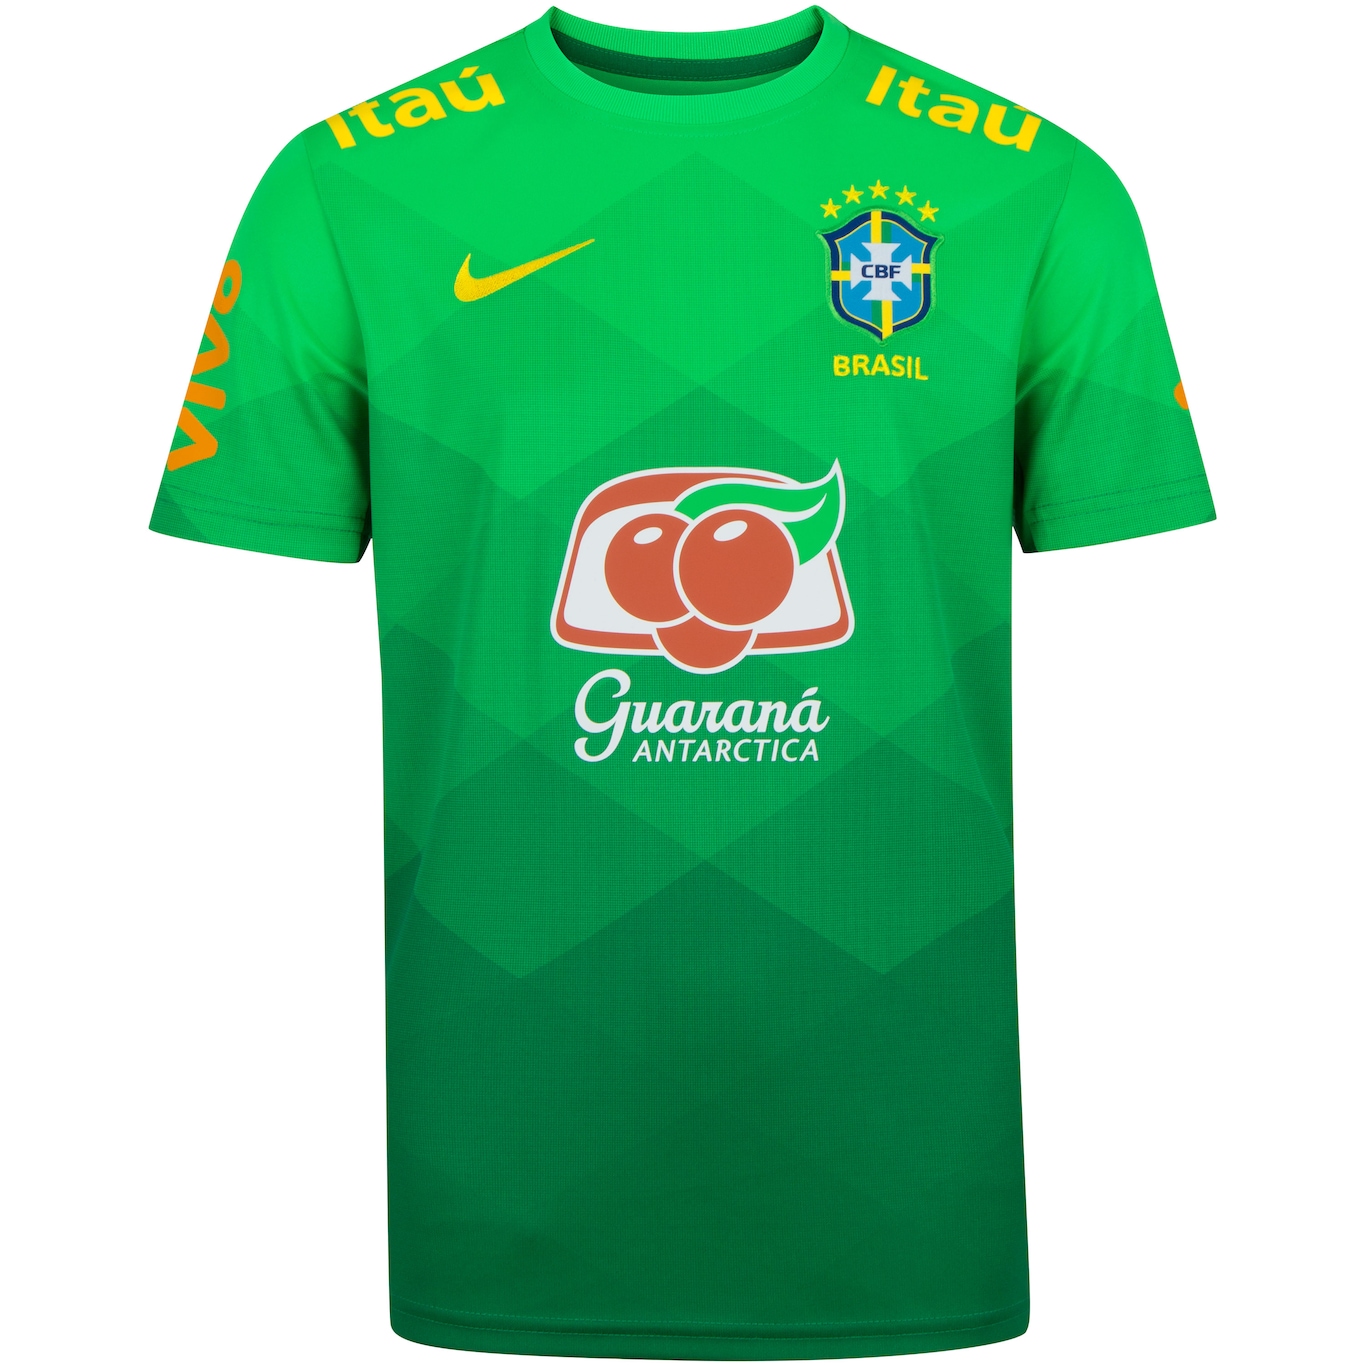 Camisa da Seleção Brasileira Oficial Treino Nike 2008 G - Fanatismo